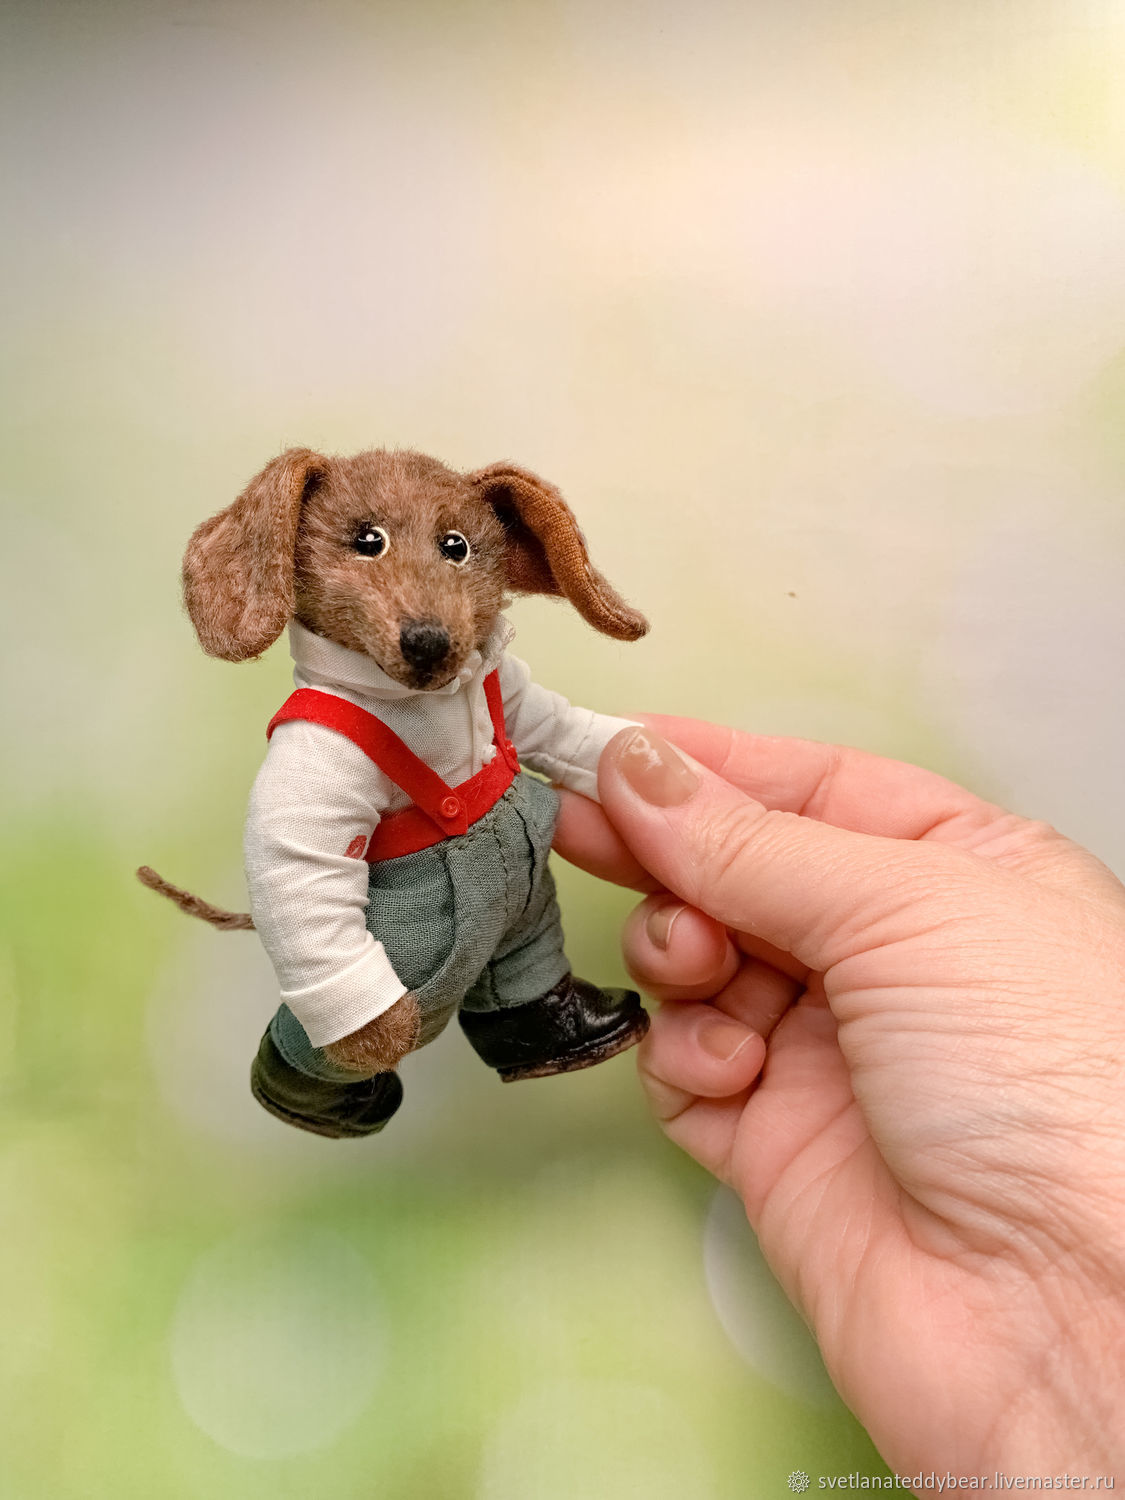 Выкройка Simplicity №1535 — Мягкие игрушки: собака, ягненок